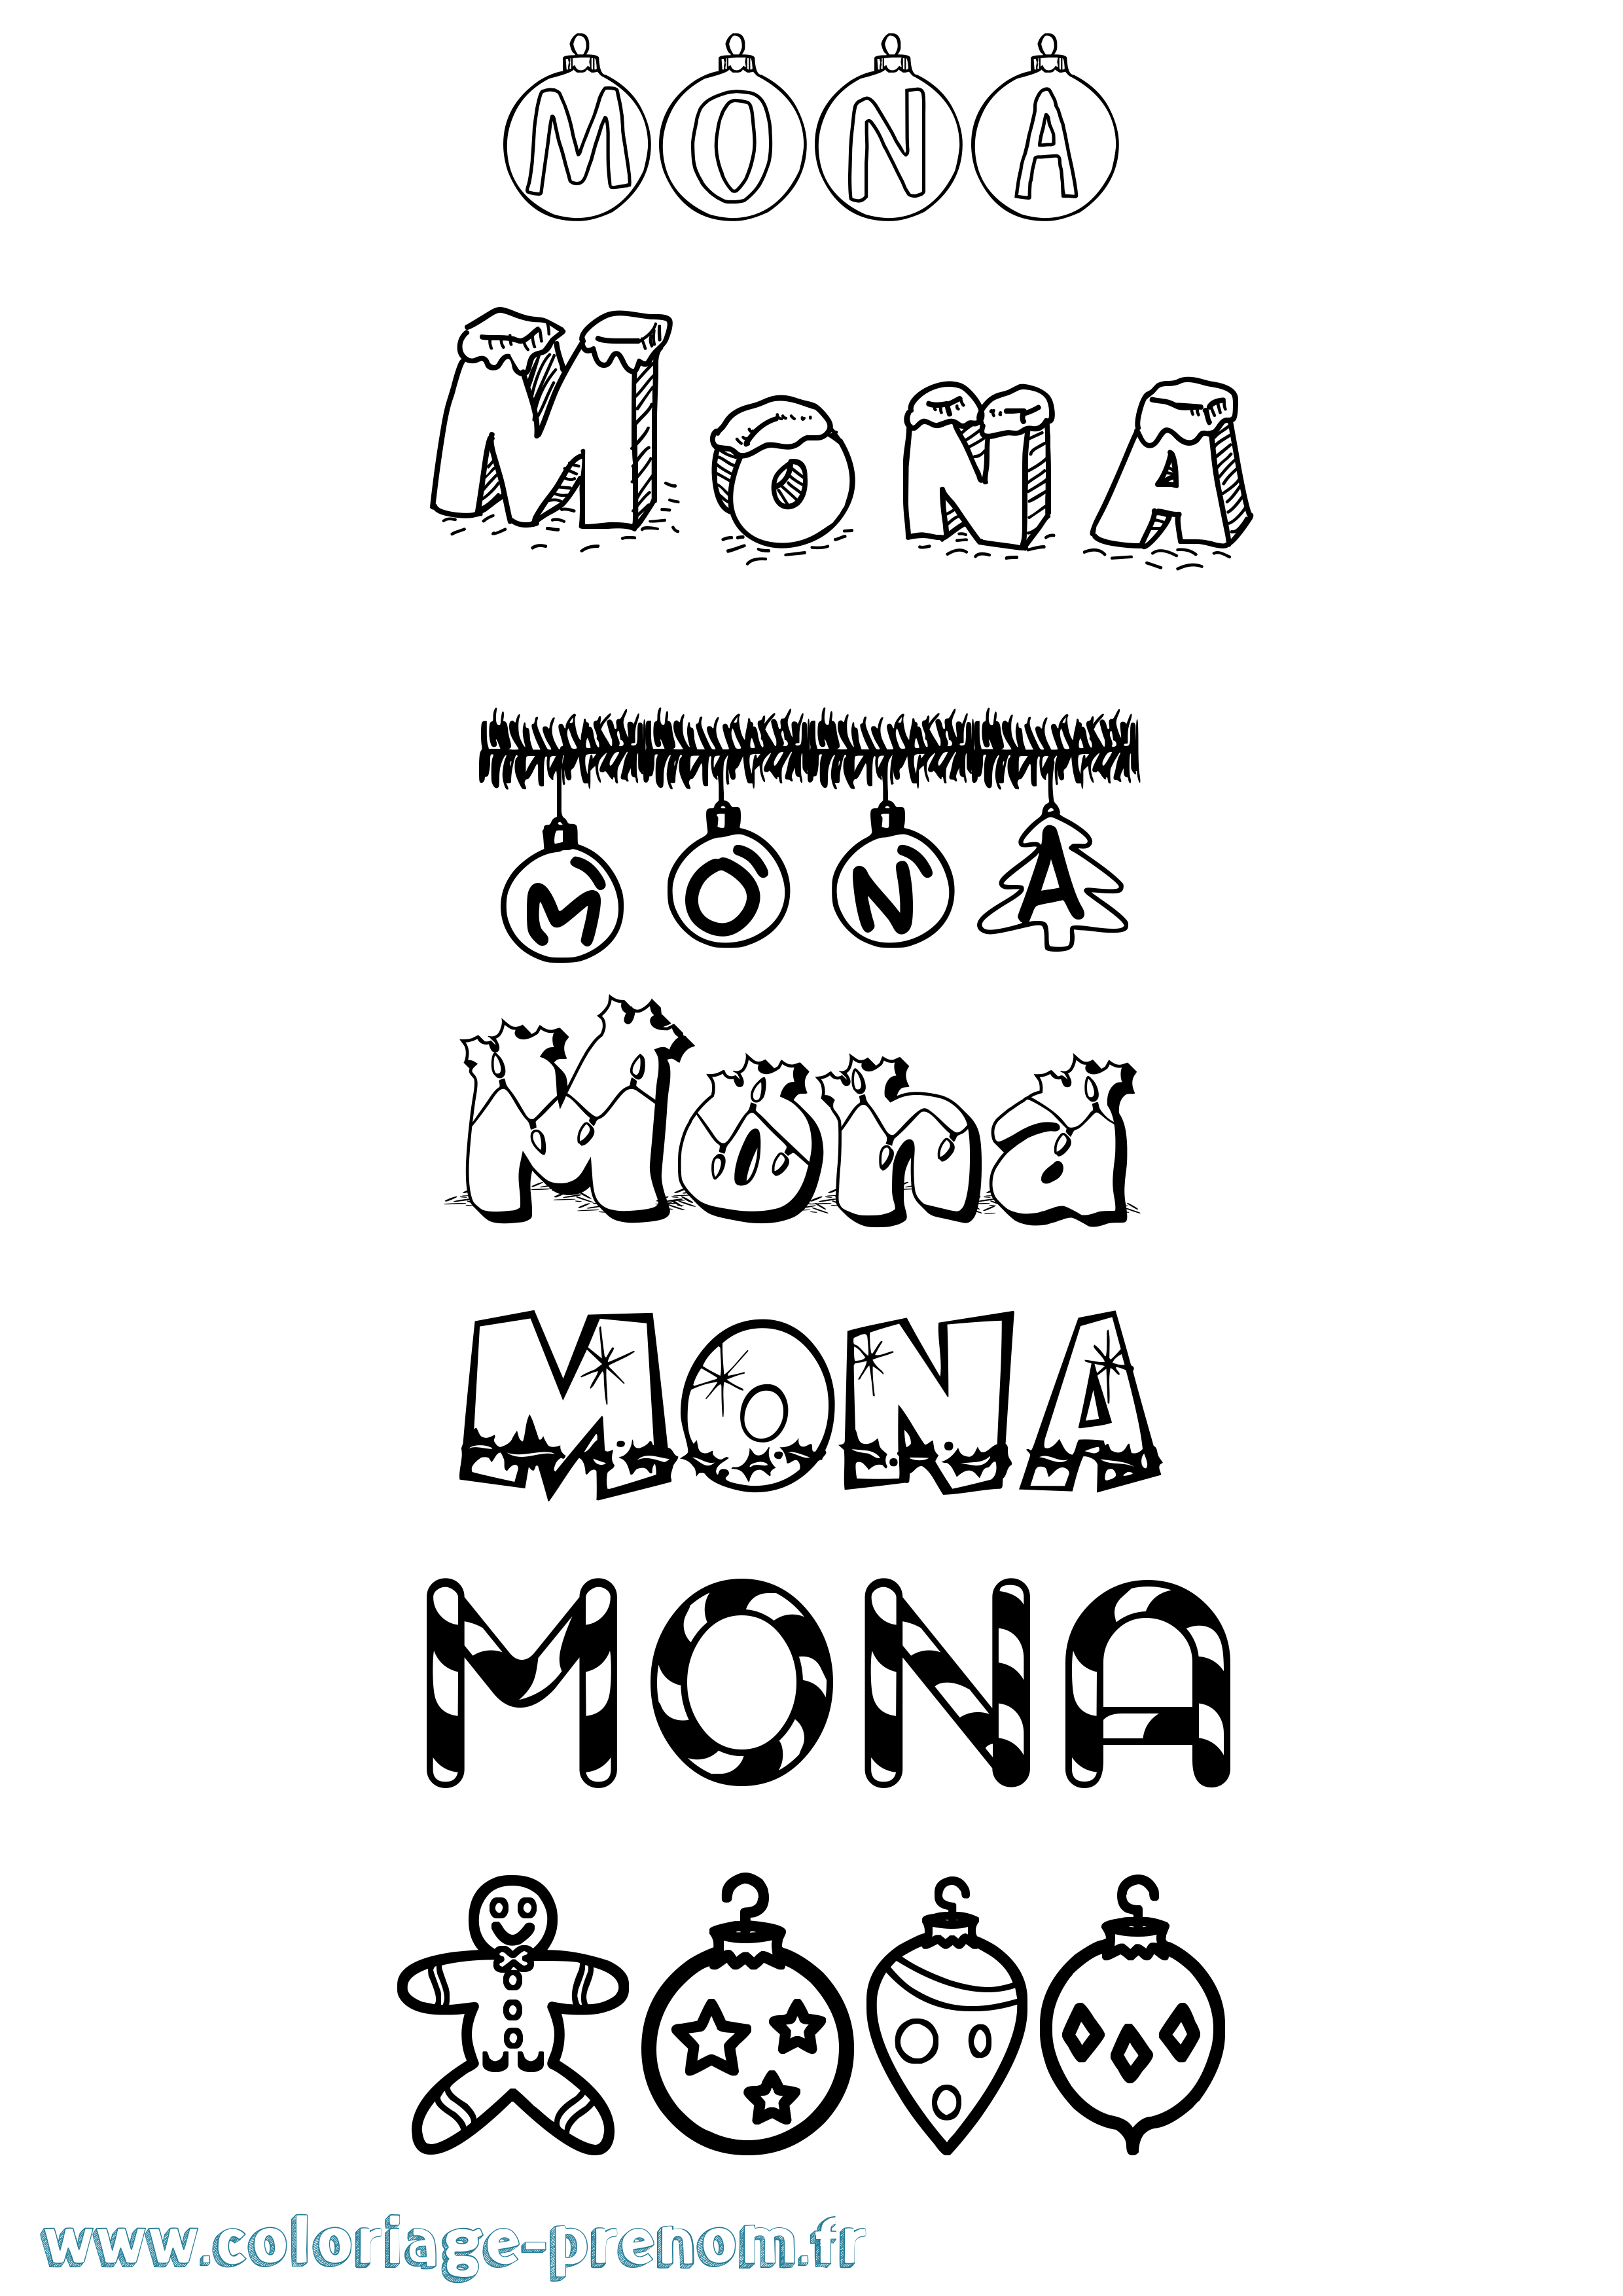 Coloriage prénom Mona